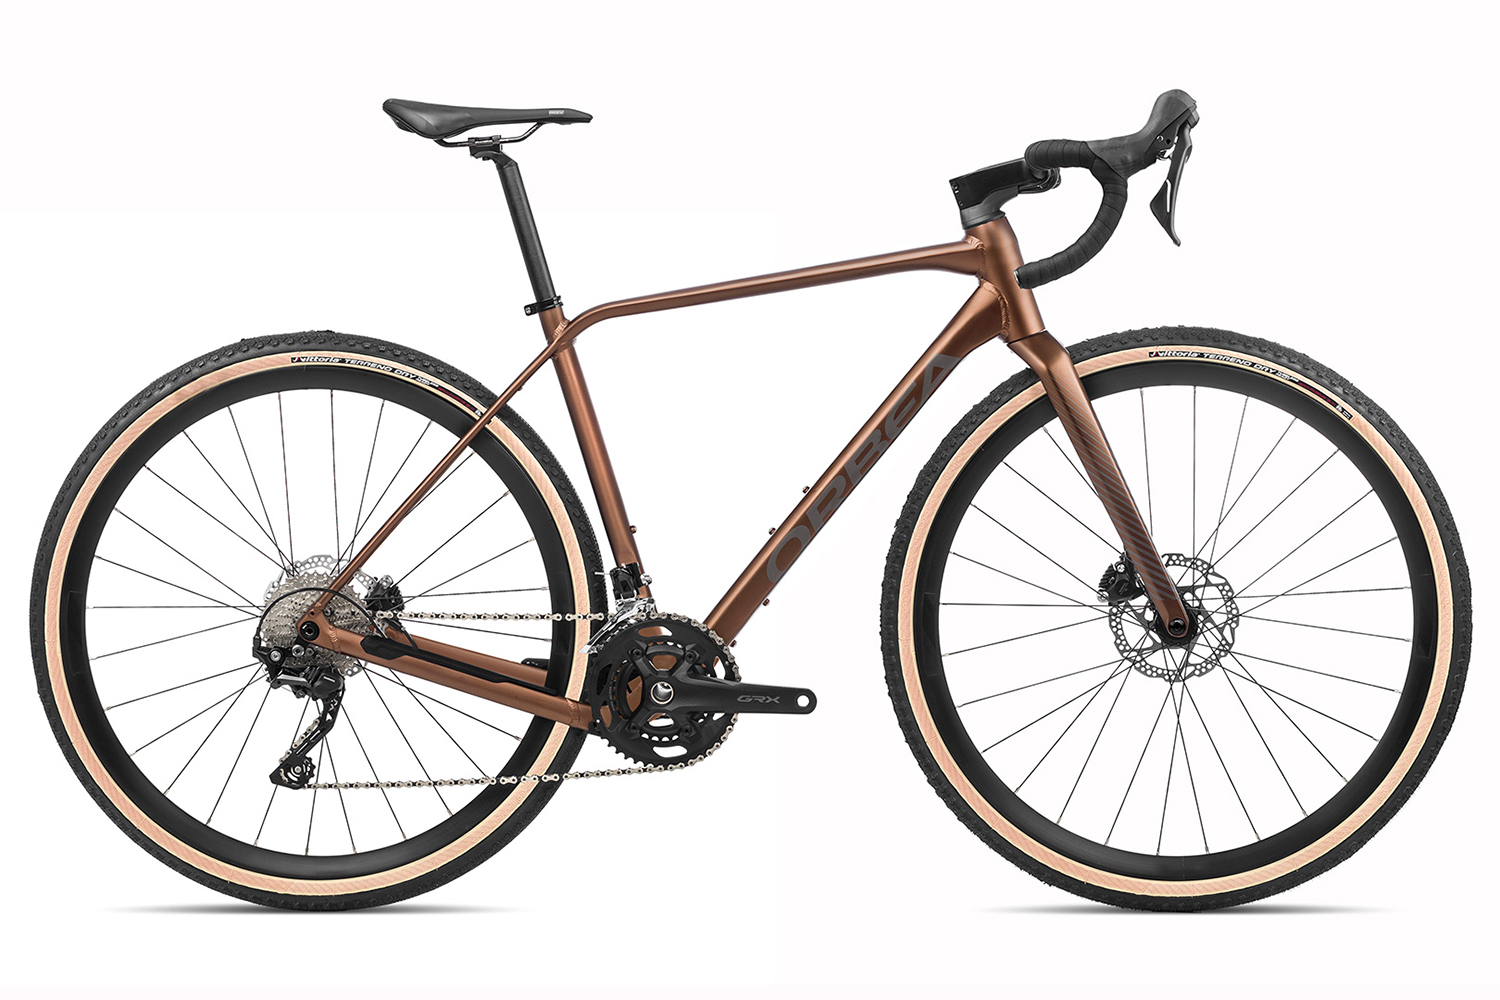  Отзывы о Шоссейном велосипеде Orbea Terra H40 2022